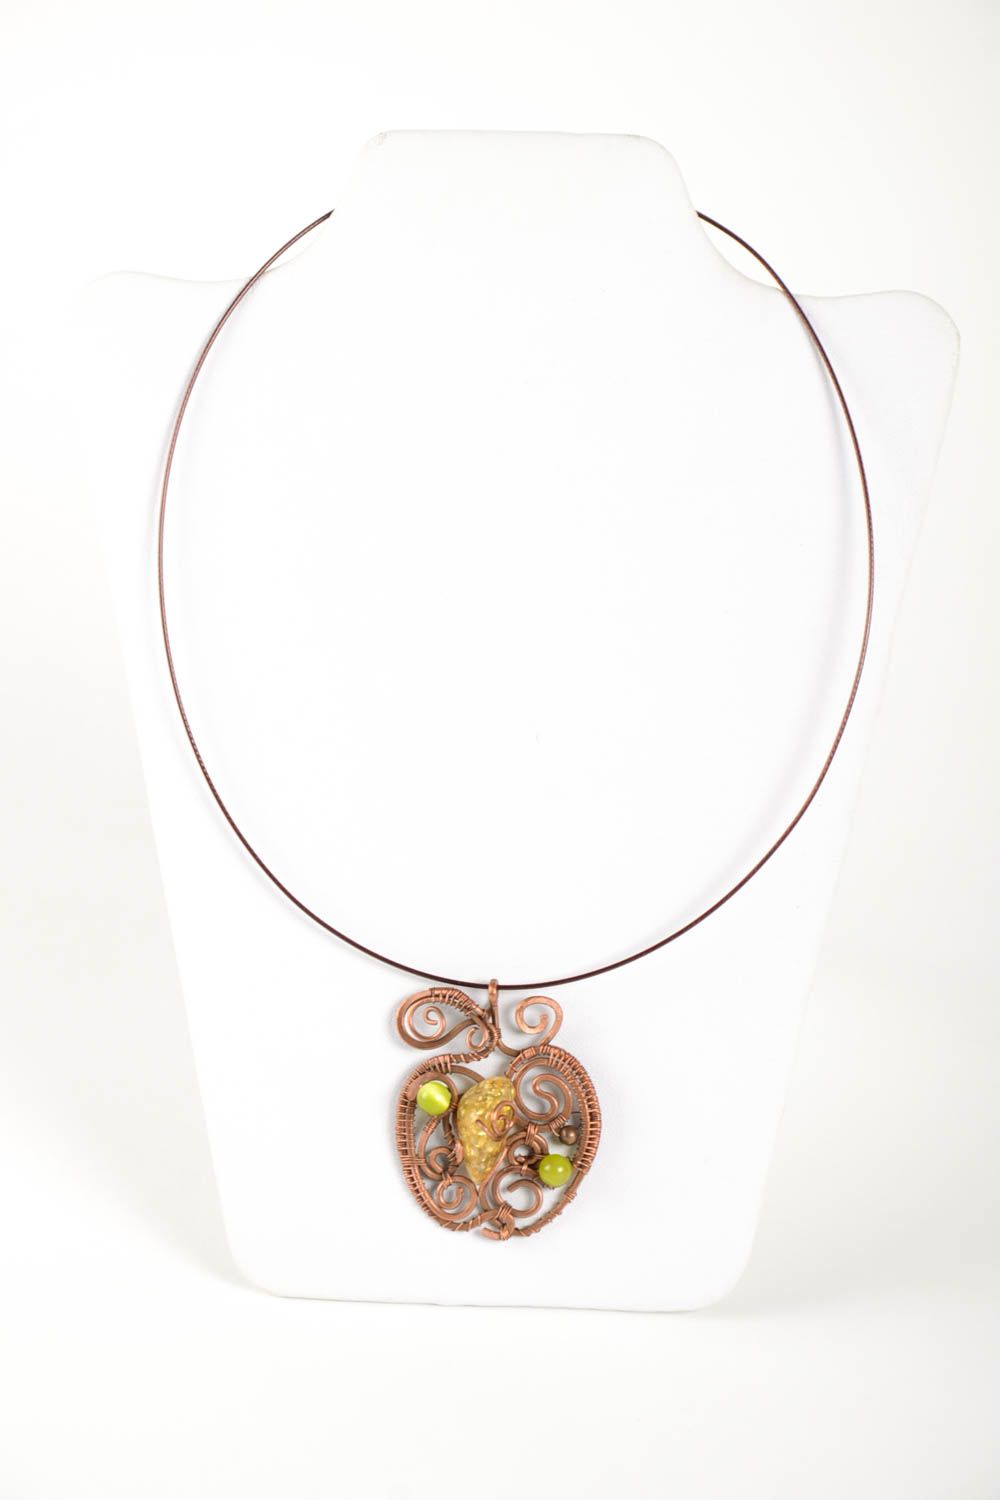 Copper pendant handmade copper wire jewelry stylish accessories for women photo 2